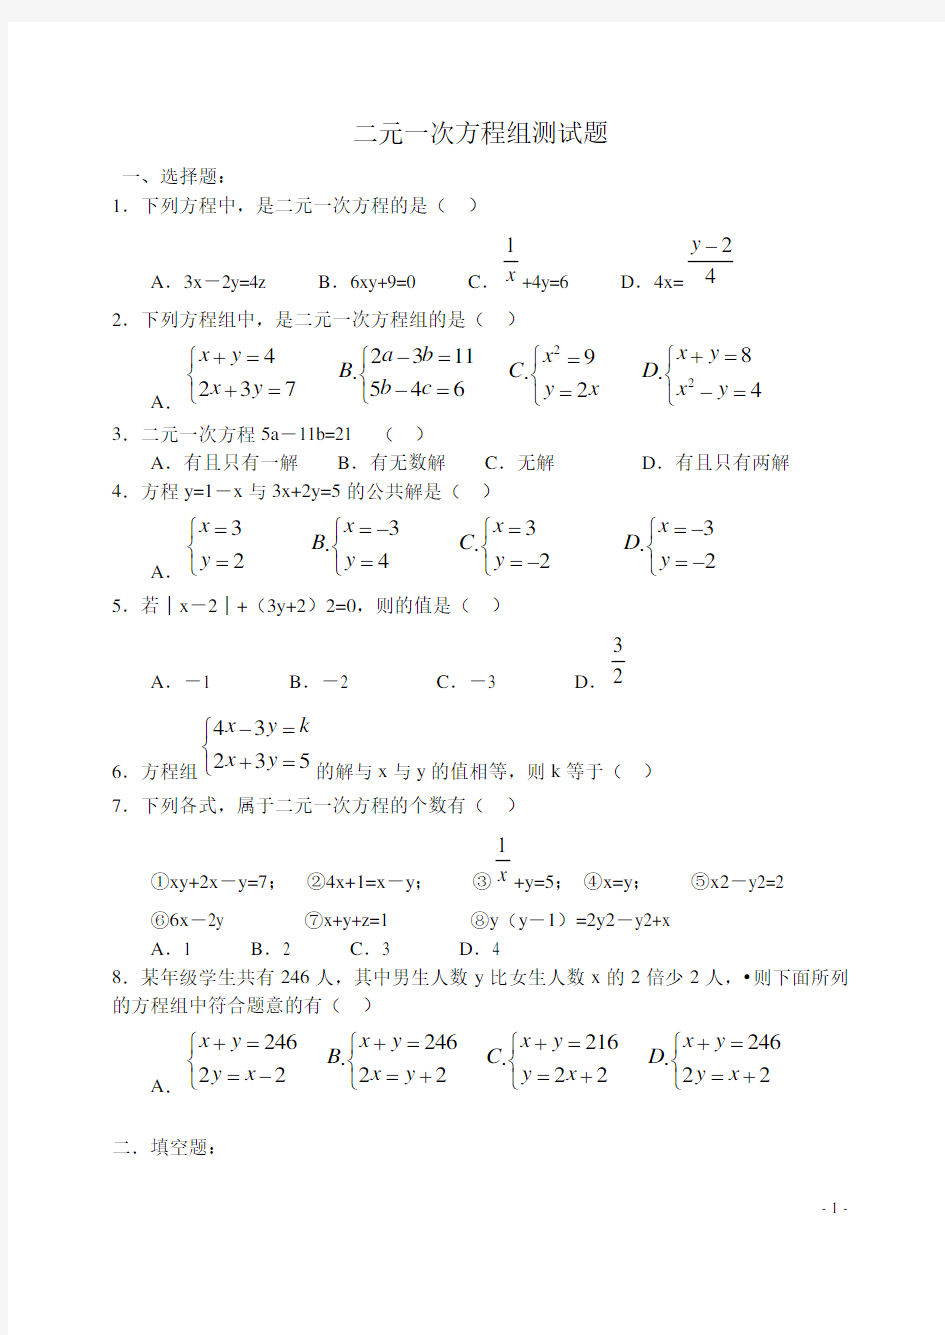 (完整版)初中数学_二元一次方程组测试题